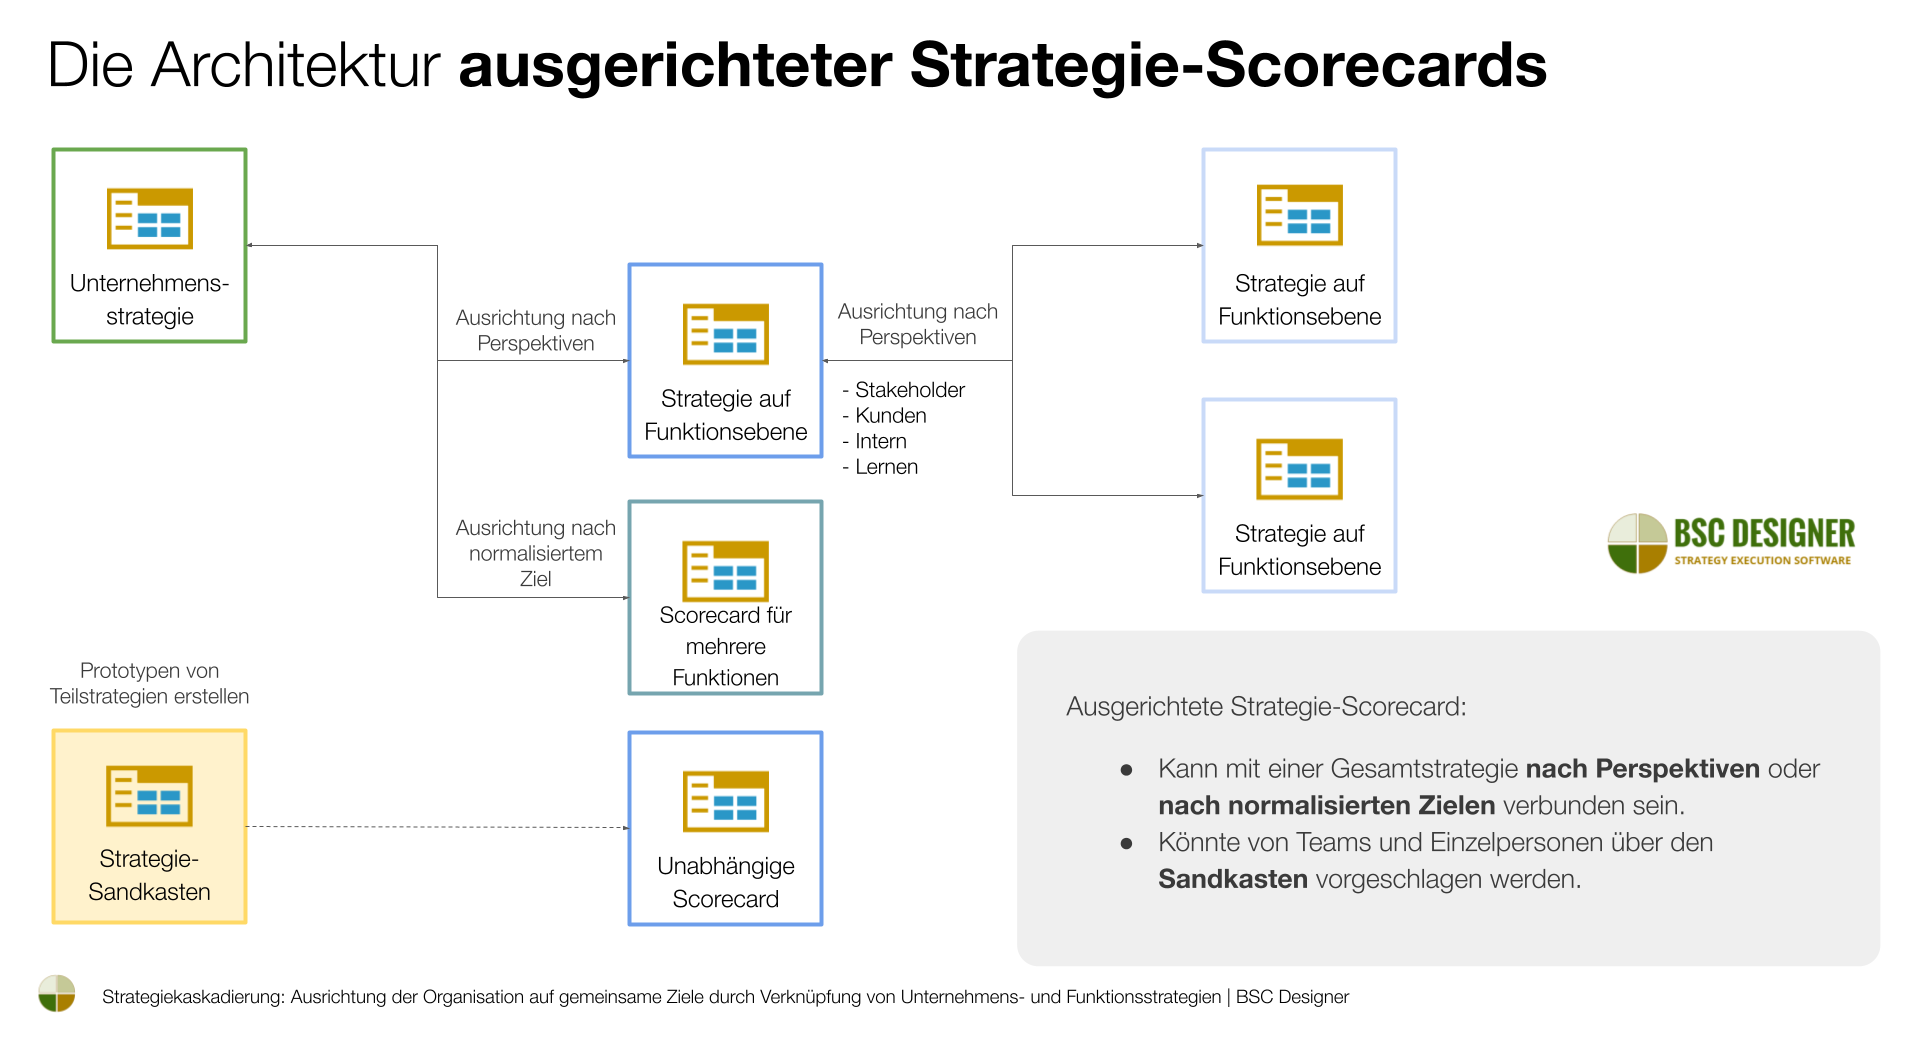 Die Architektur von ausgerichteten Strategie-Scorecards